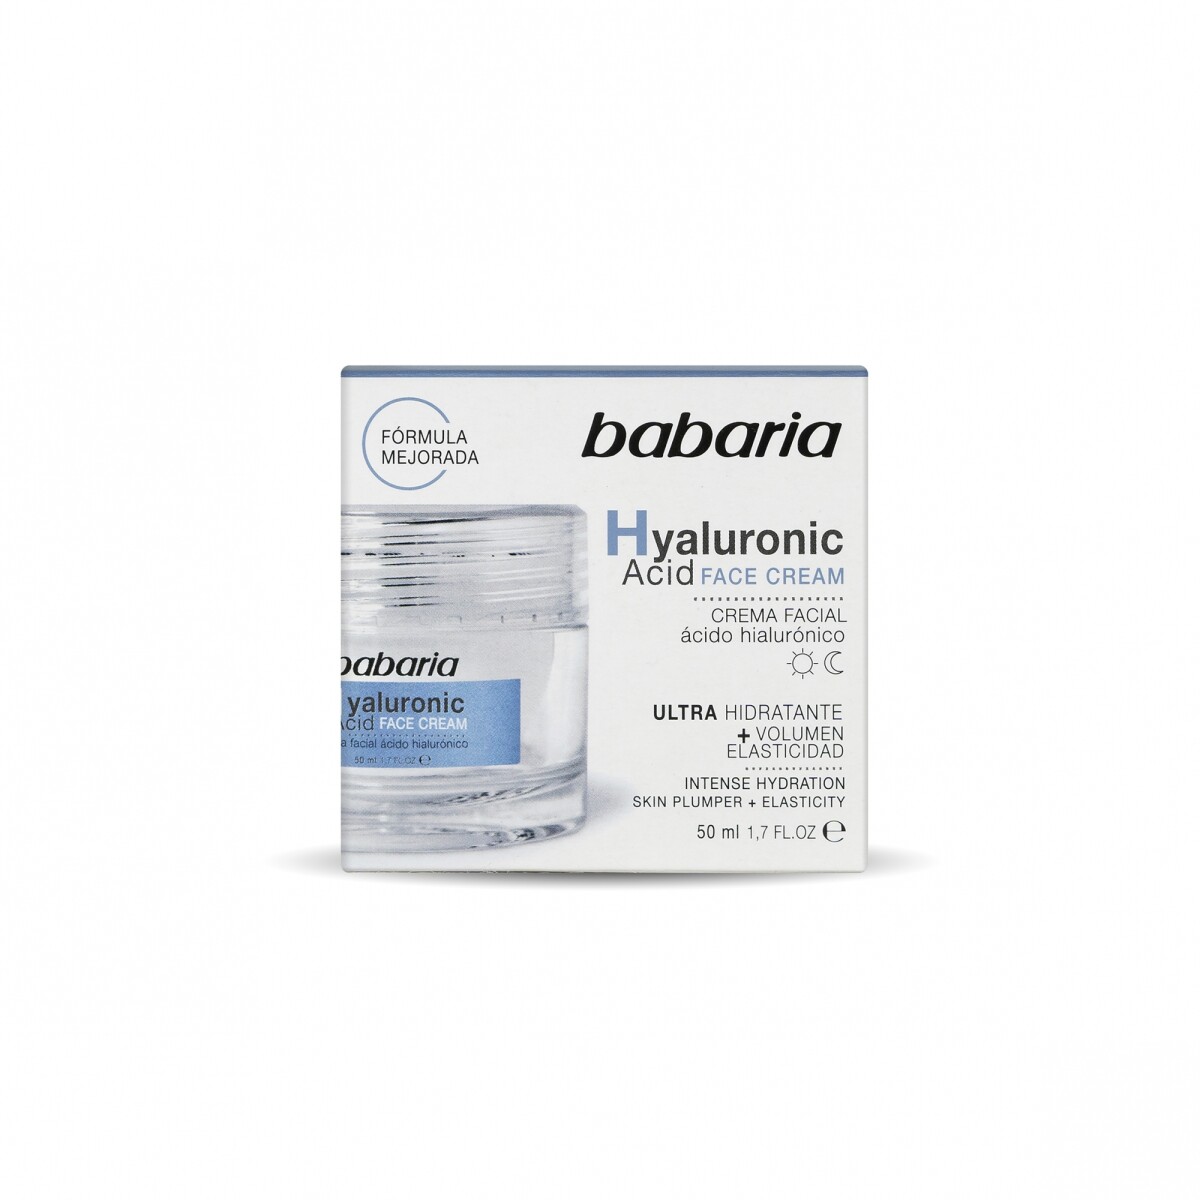 Crema facial Babaria x 50 ml - Ácido hialurónico 